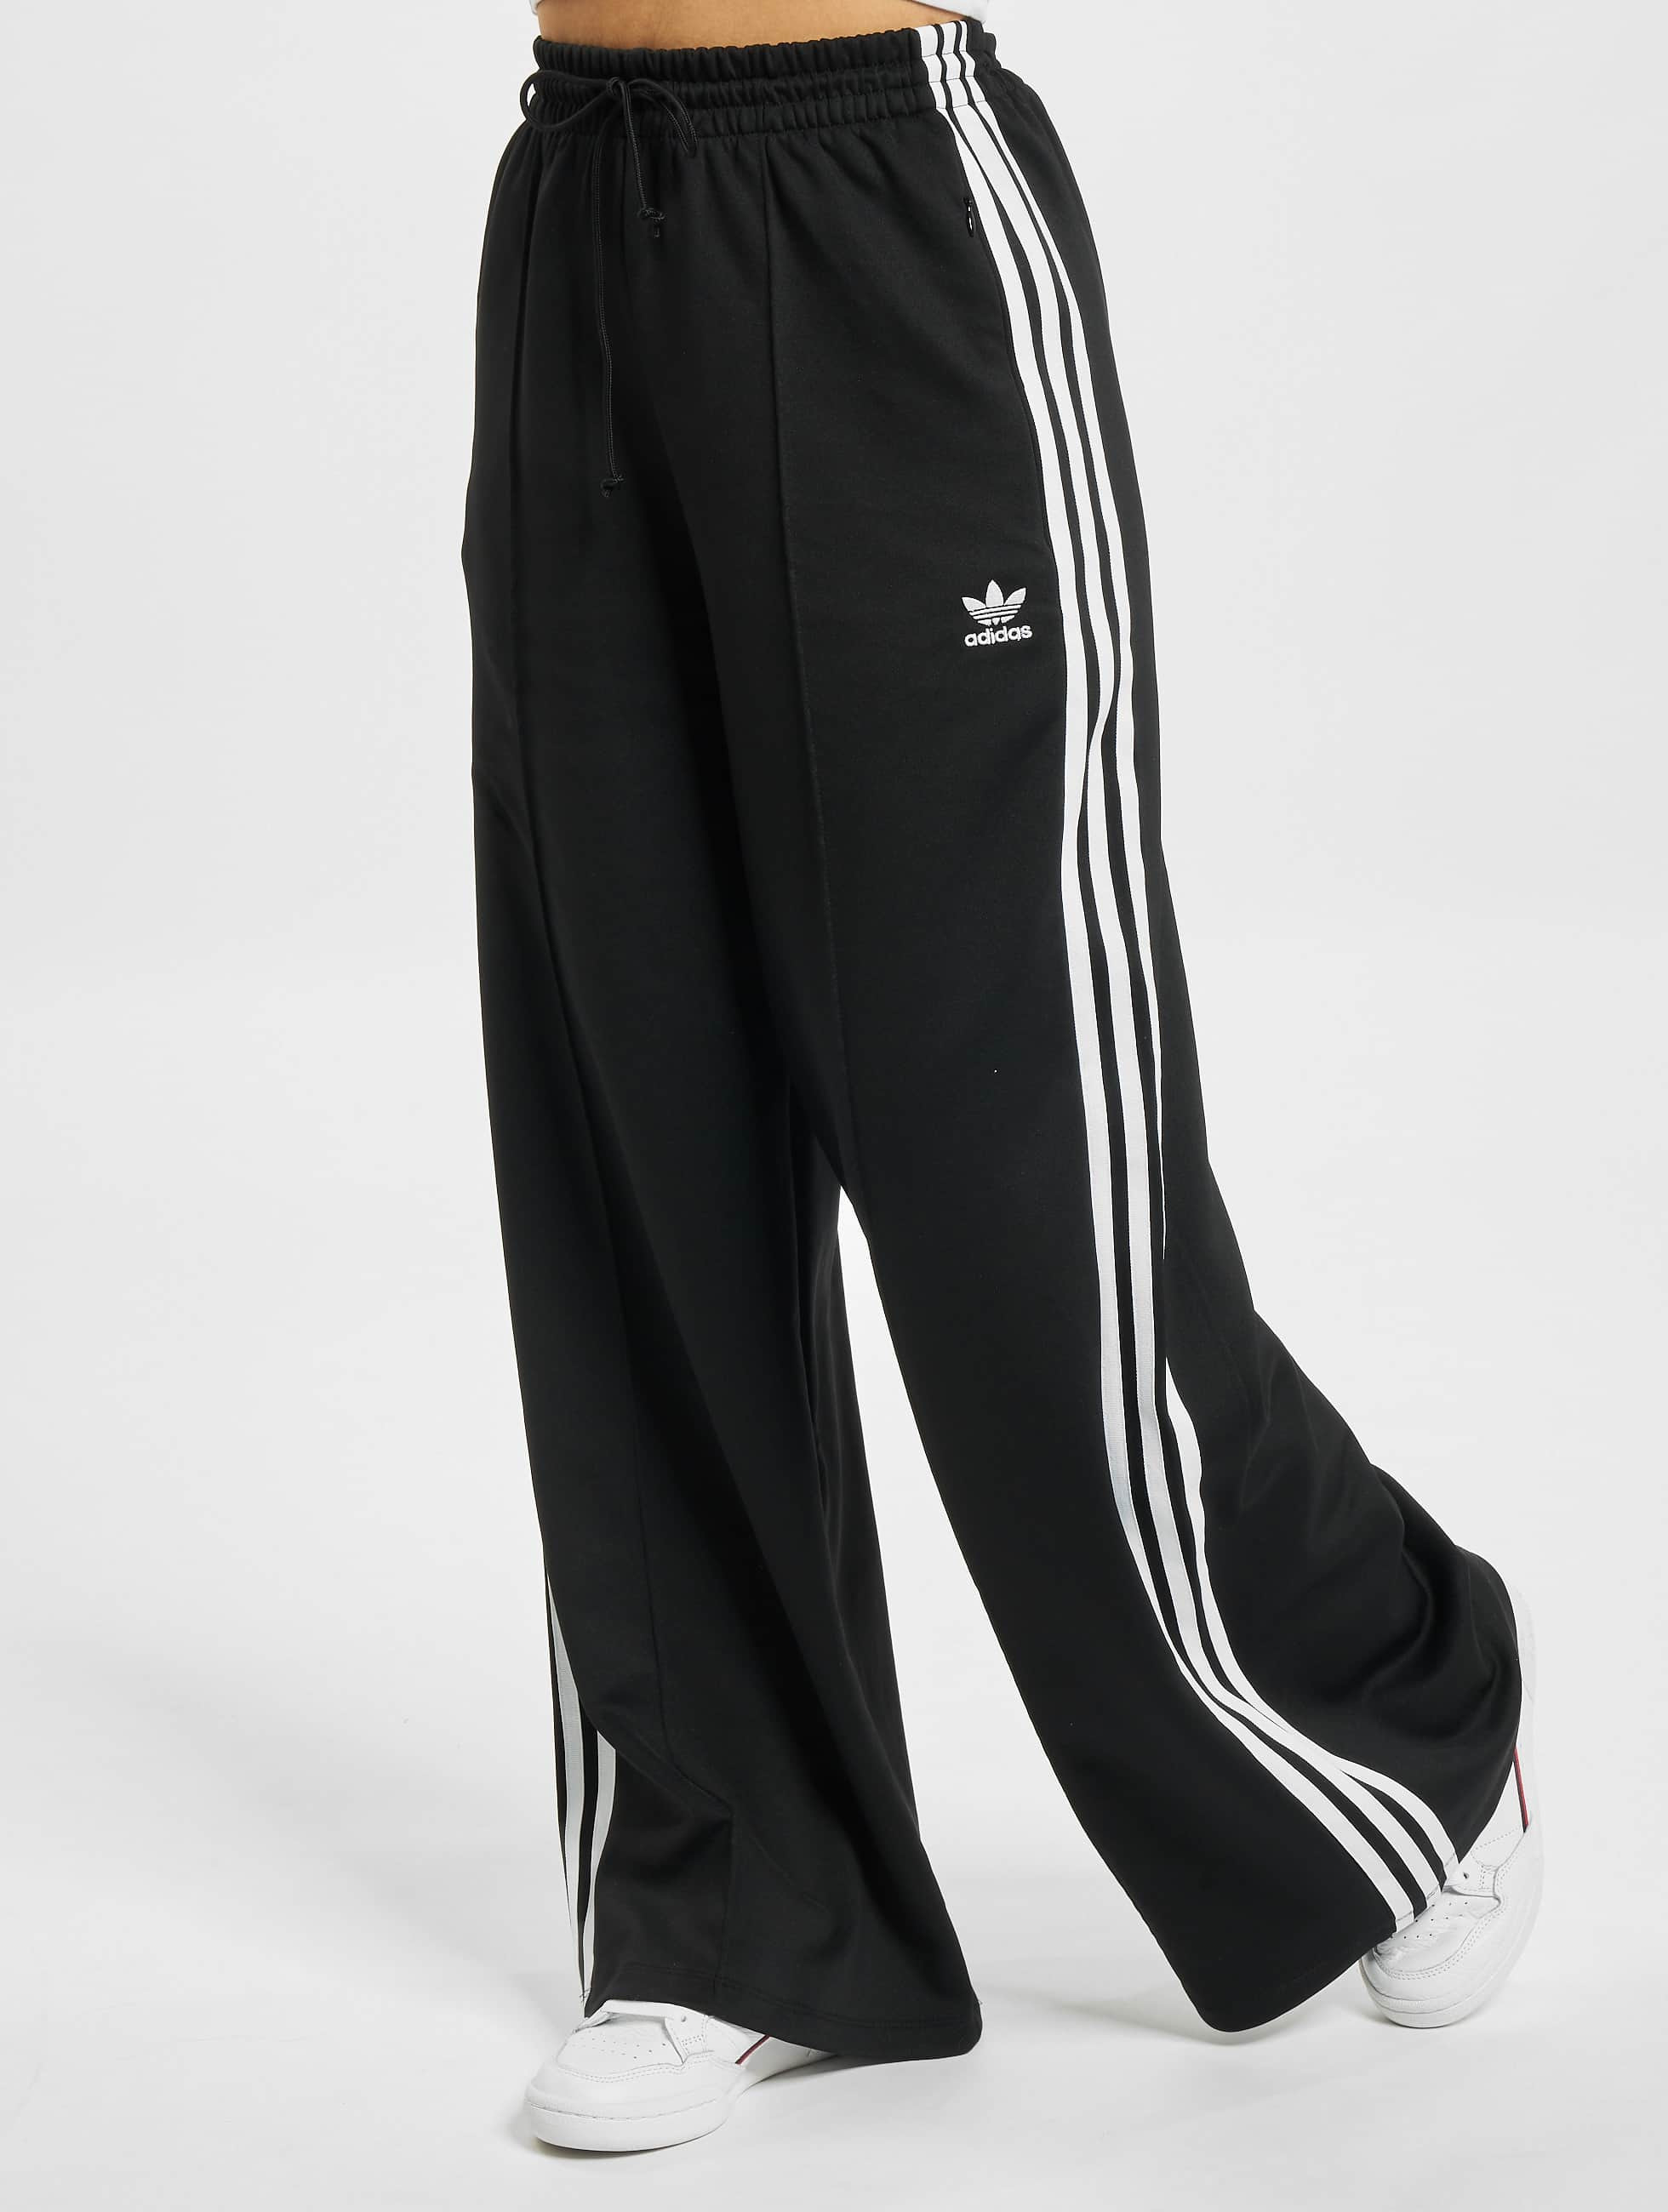 鍔 Blootstellen Verdorie adidas Originals Damen Jogginghose Originals in schwarz 806184